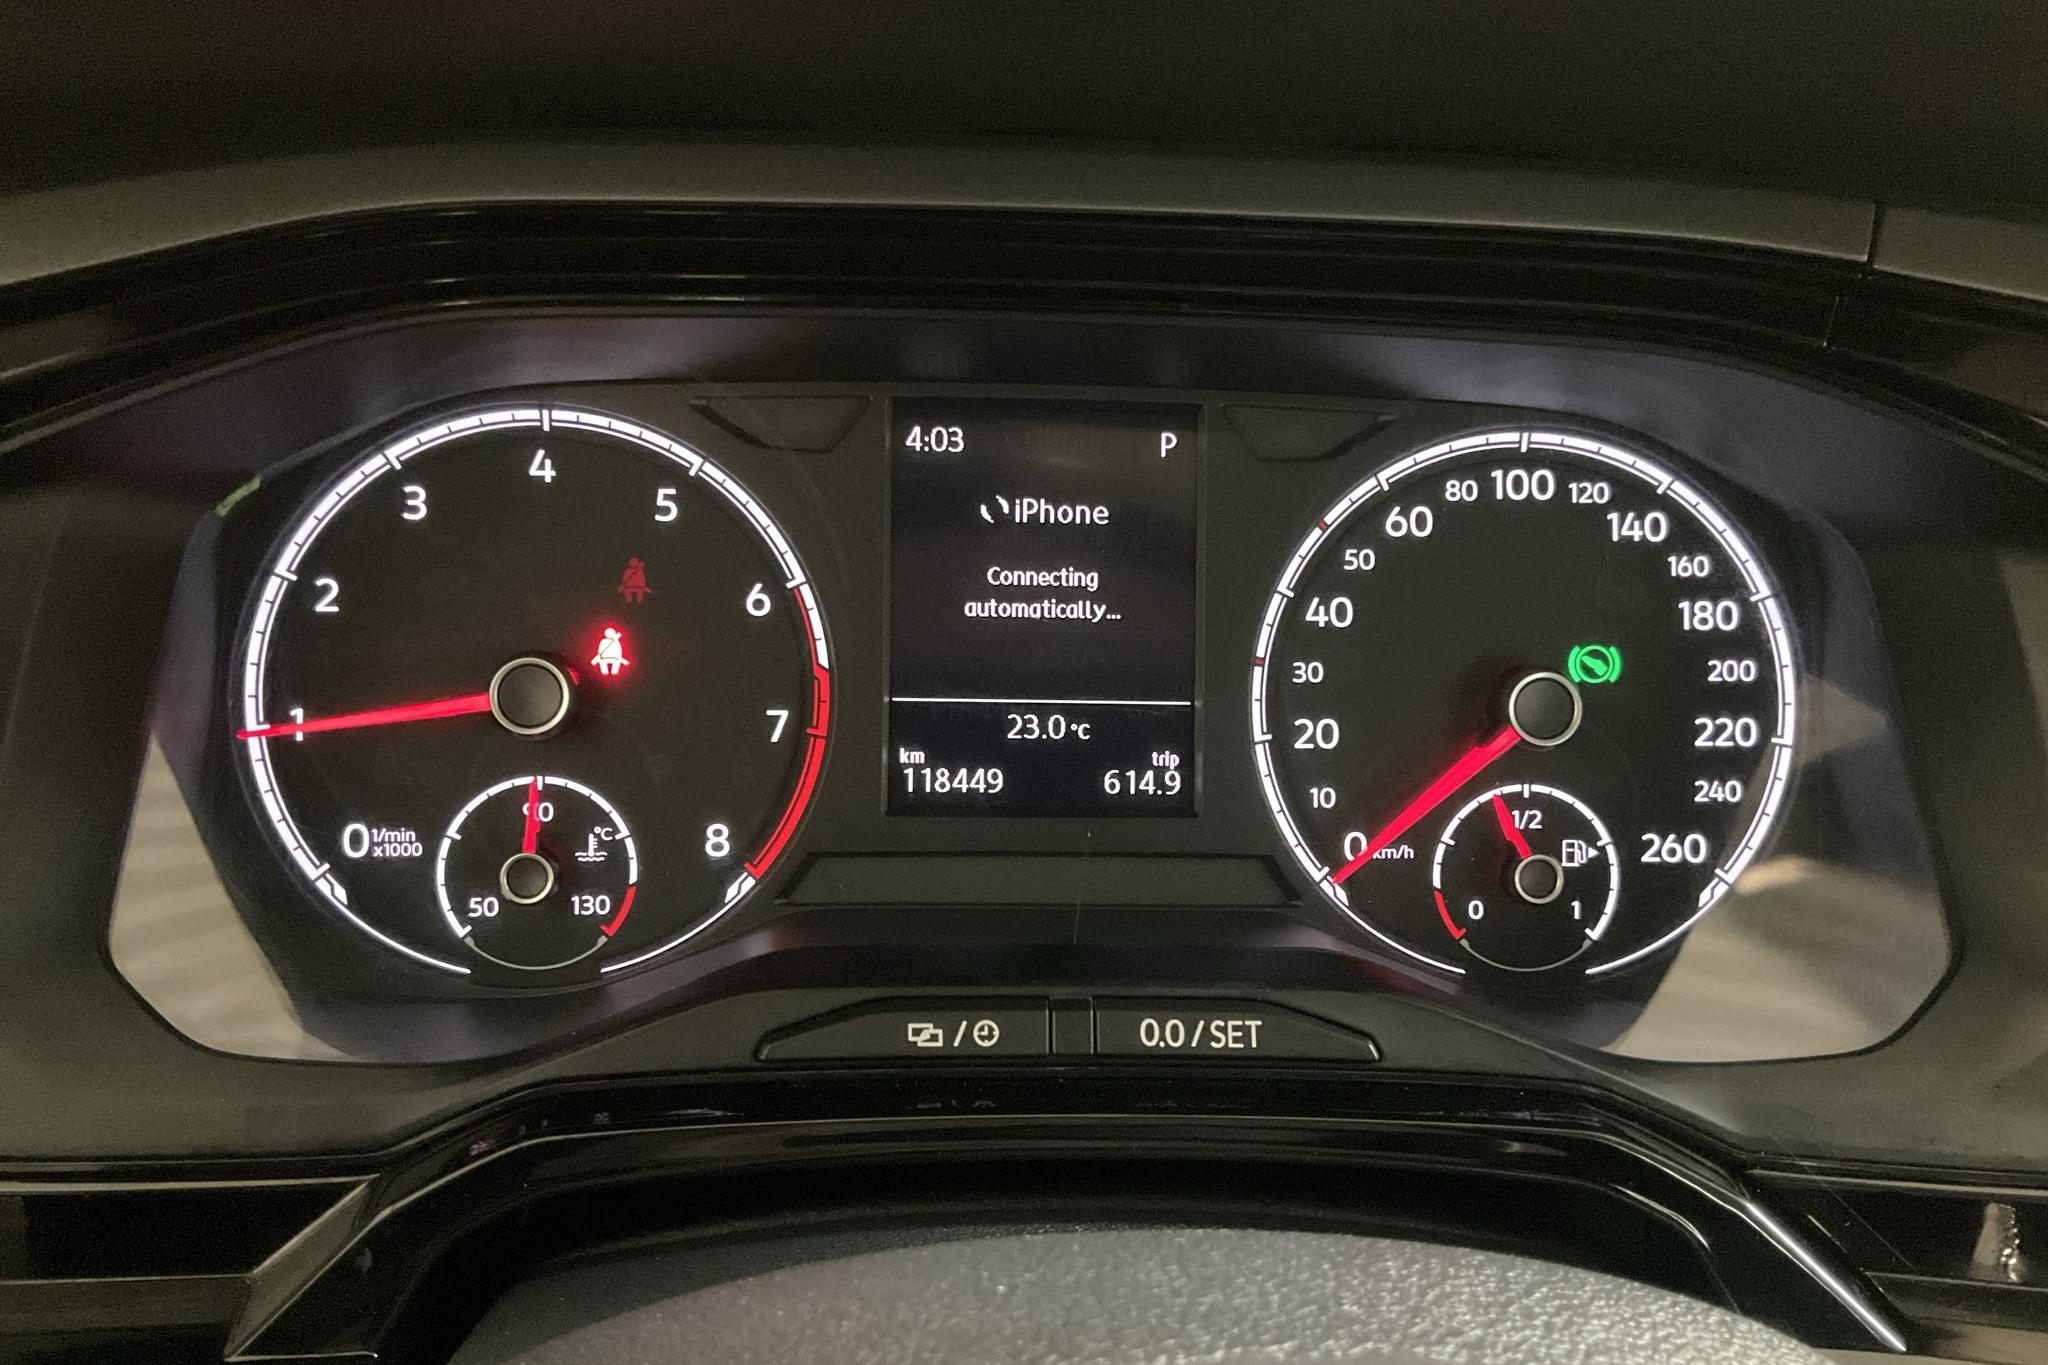 VW Polo 1.0 TSI 5dr (95hk) - 11 844 mil - Automat - vit - 2018